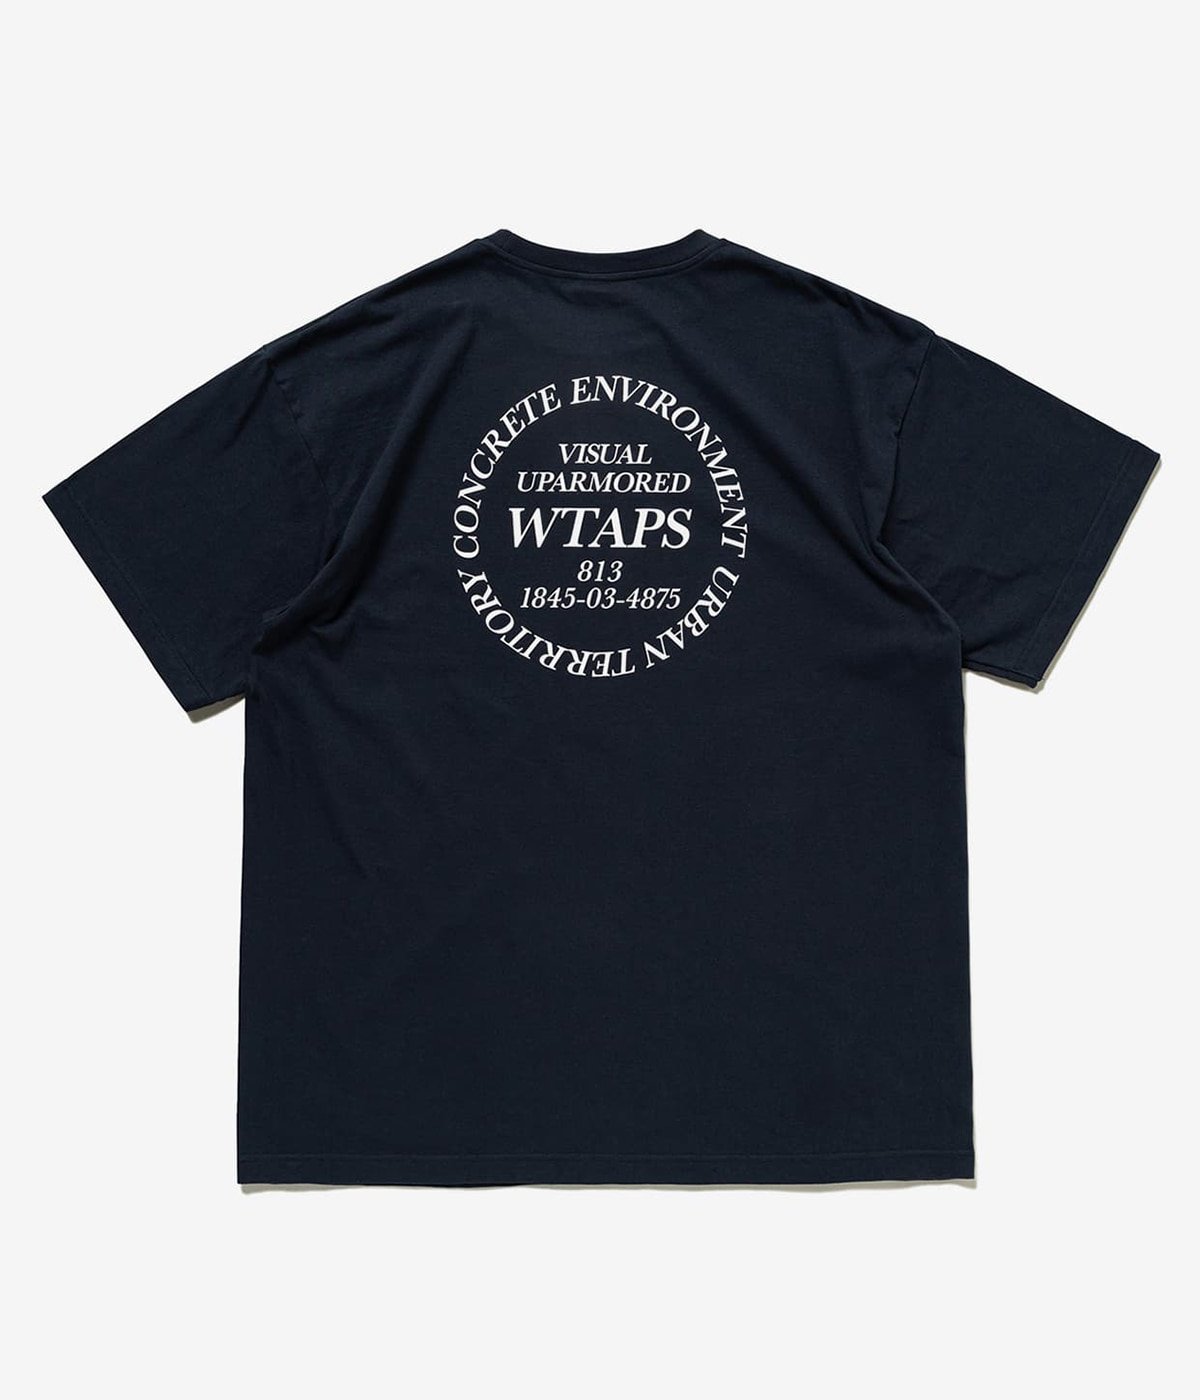 wtaps Tシャツ INGREDIENTS | hartwellspremium.com